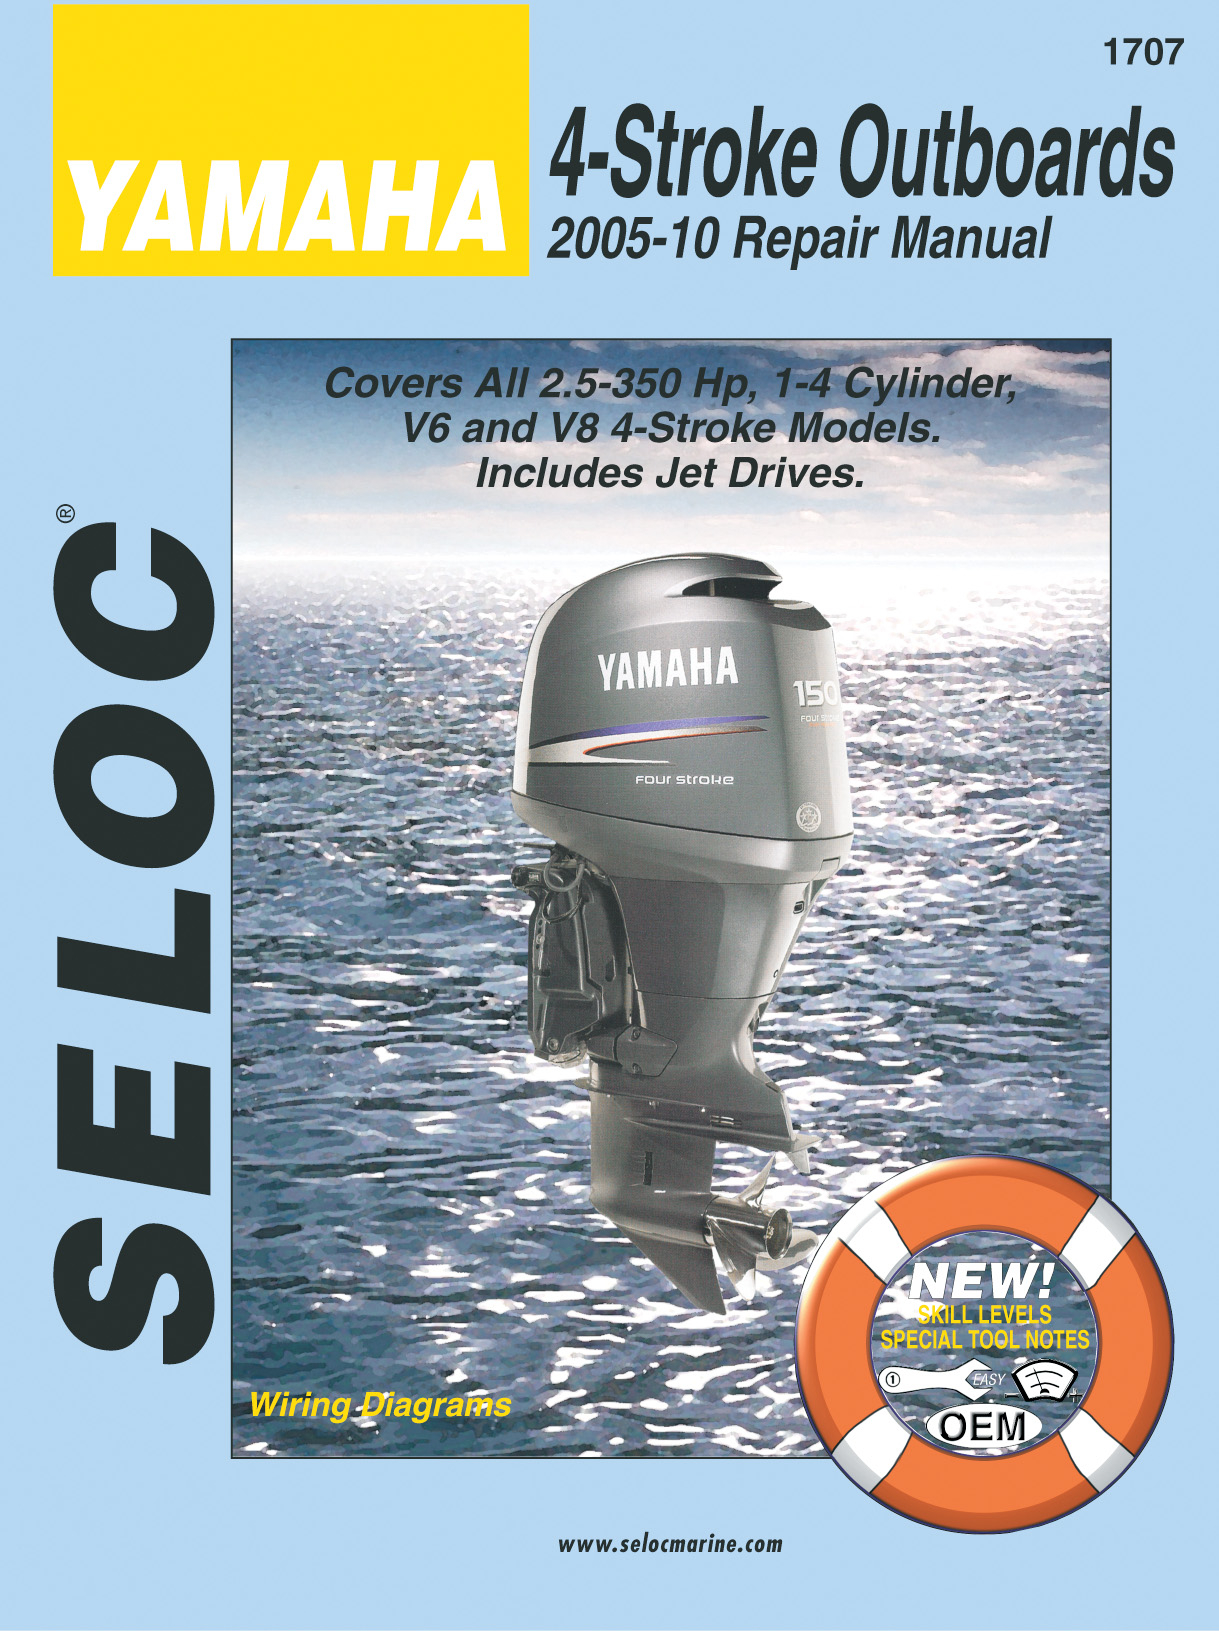 SELOC YAMAHA OUTBOARD MOTOR ENGINE REPAIR MANUAL 2005-2010 4 STROKE SEL 1707